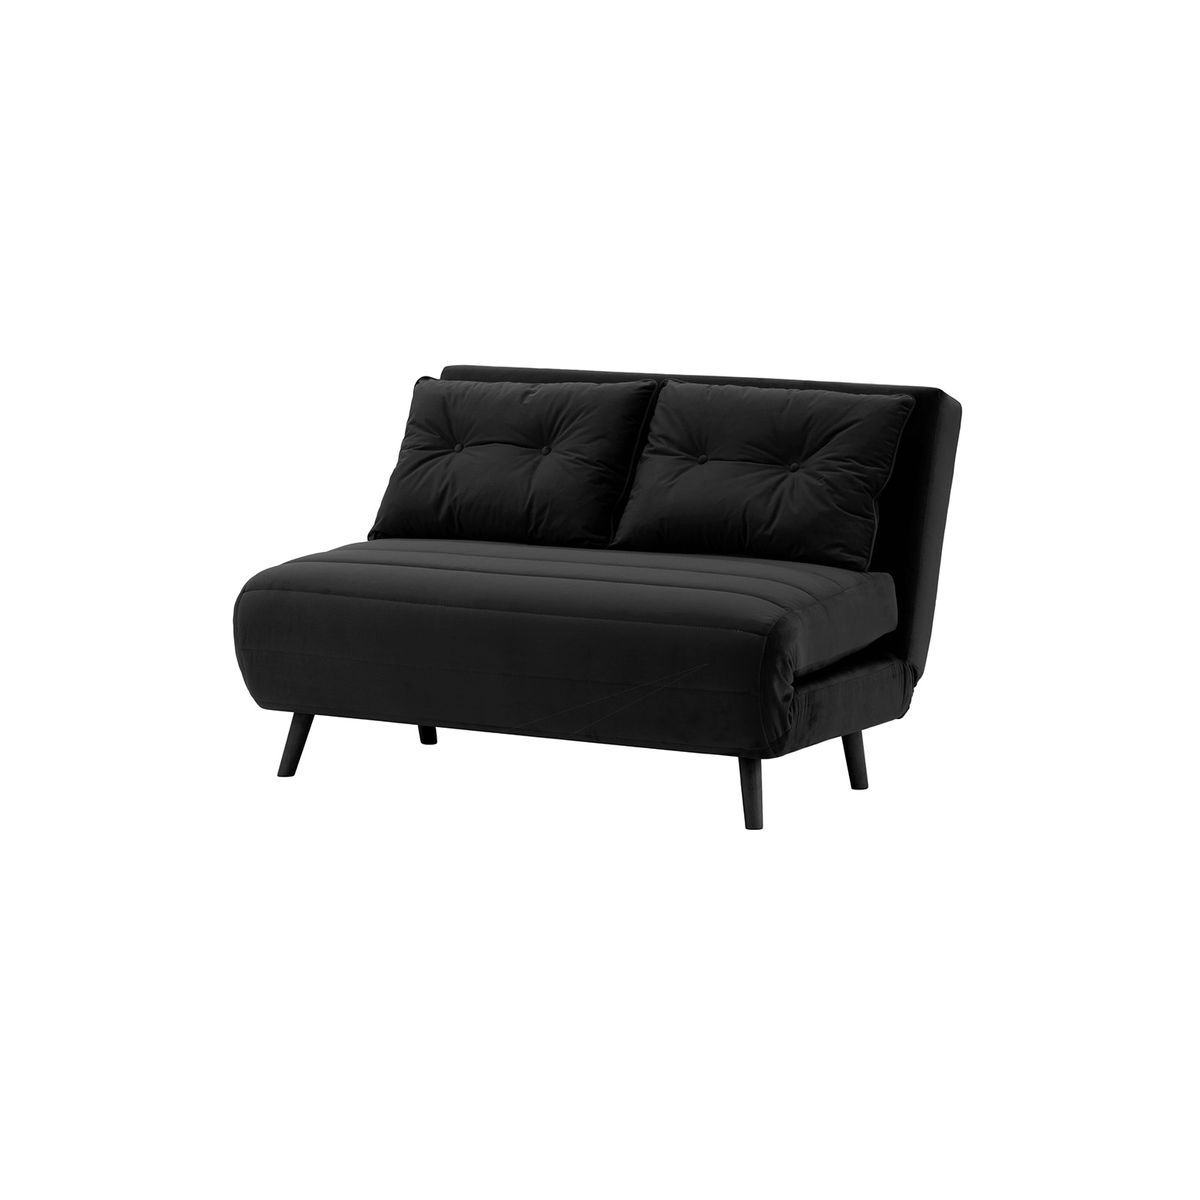 Flic Double Sofa Bed - width 120 cm, black, Leg colour: black - image 1